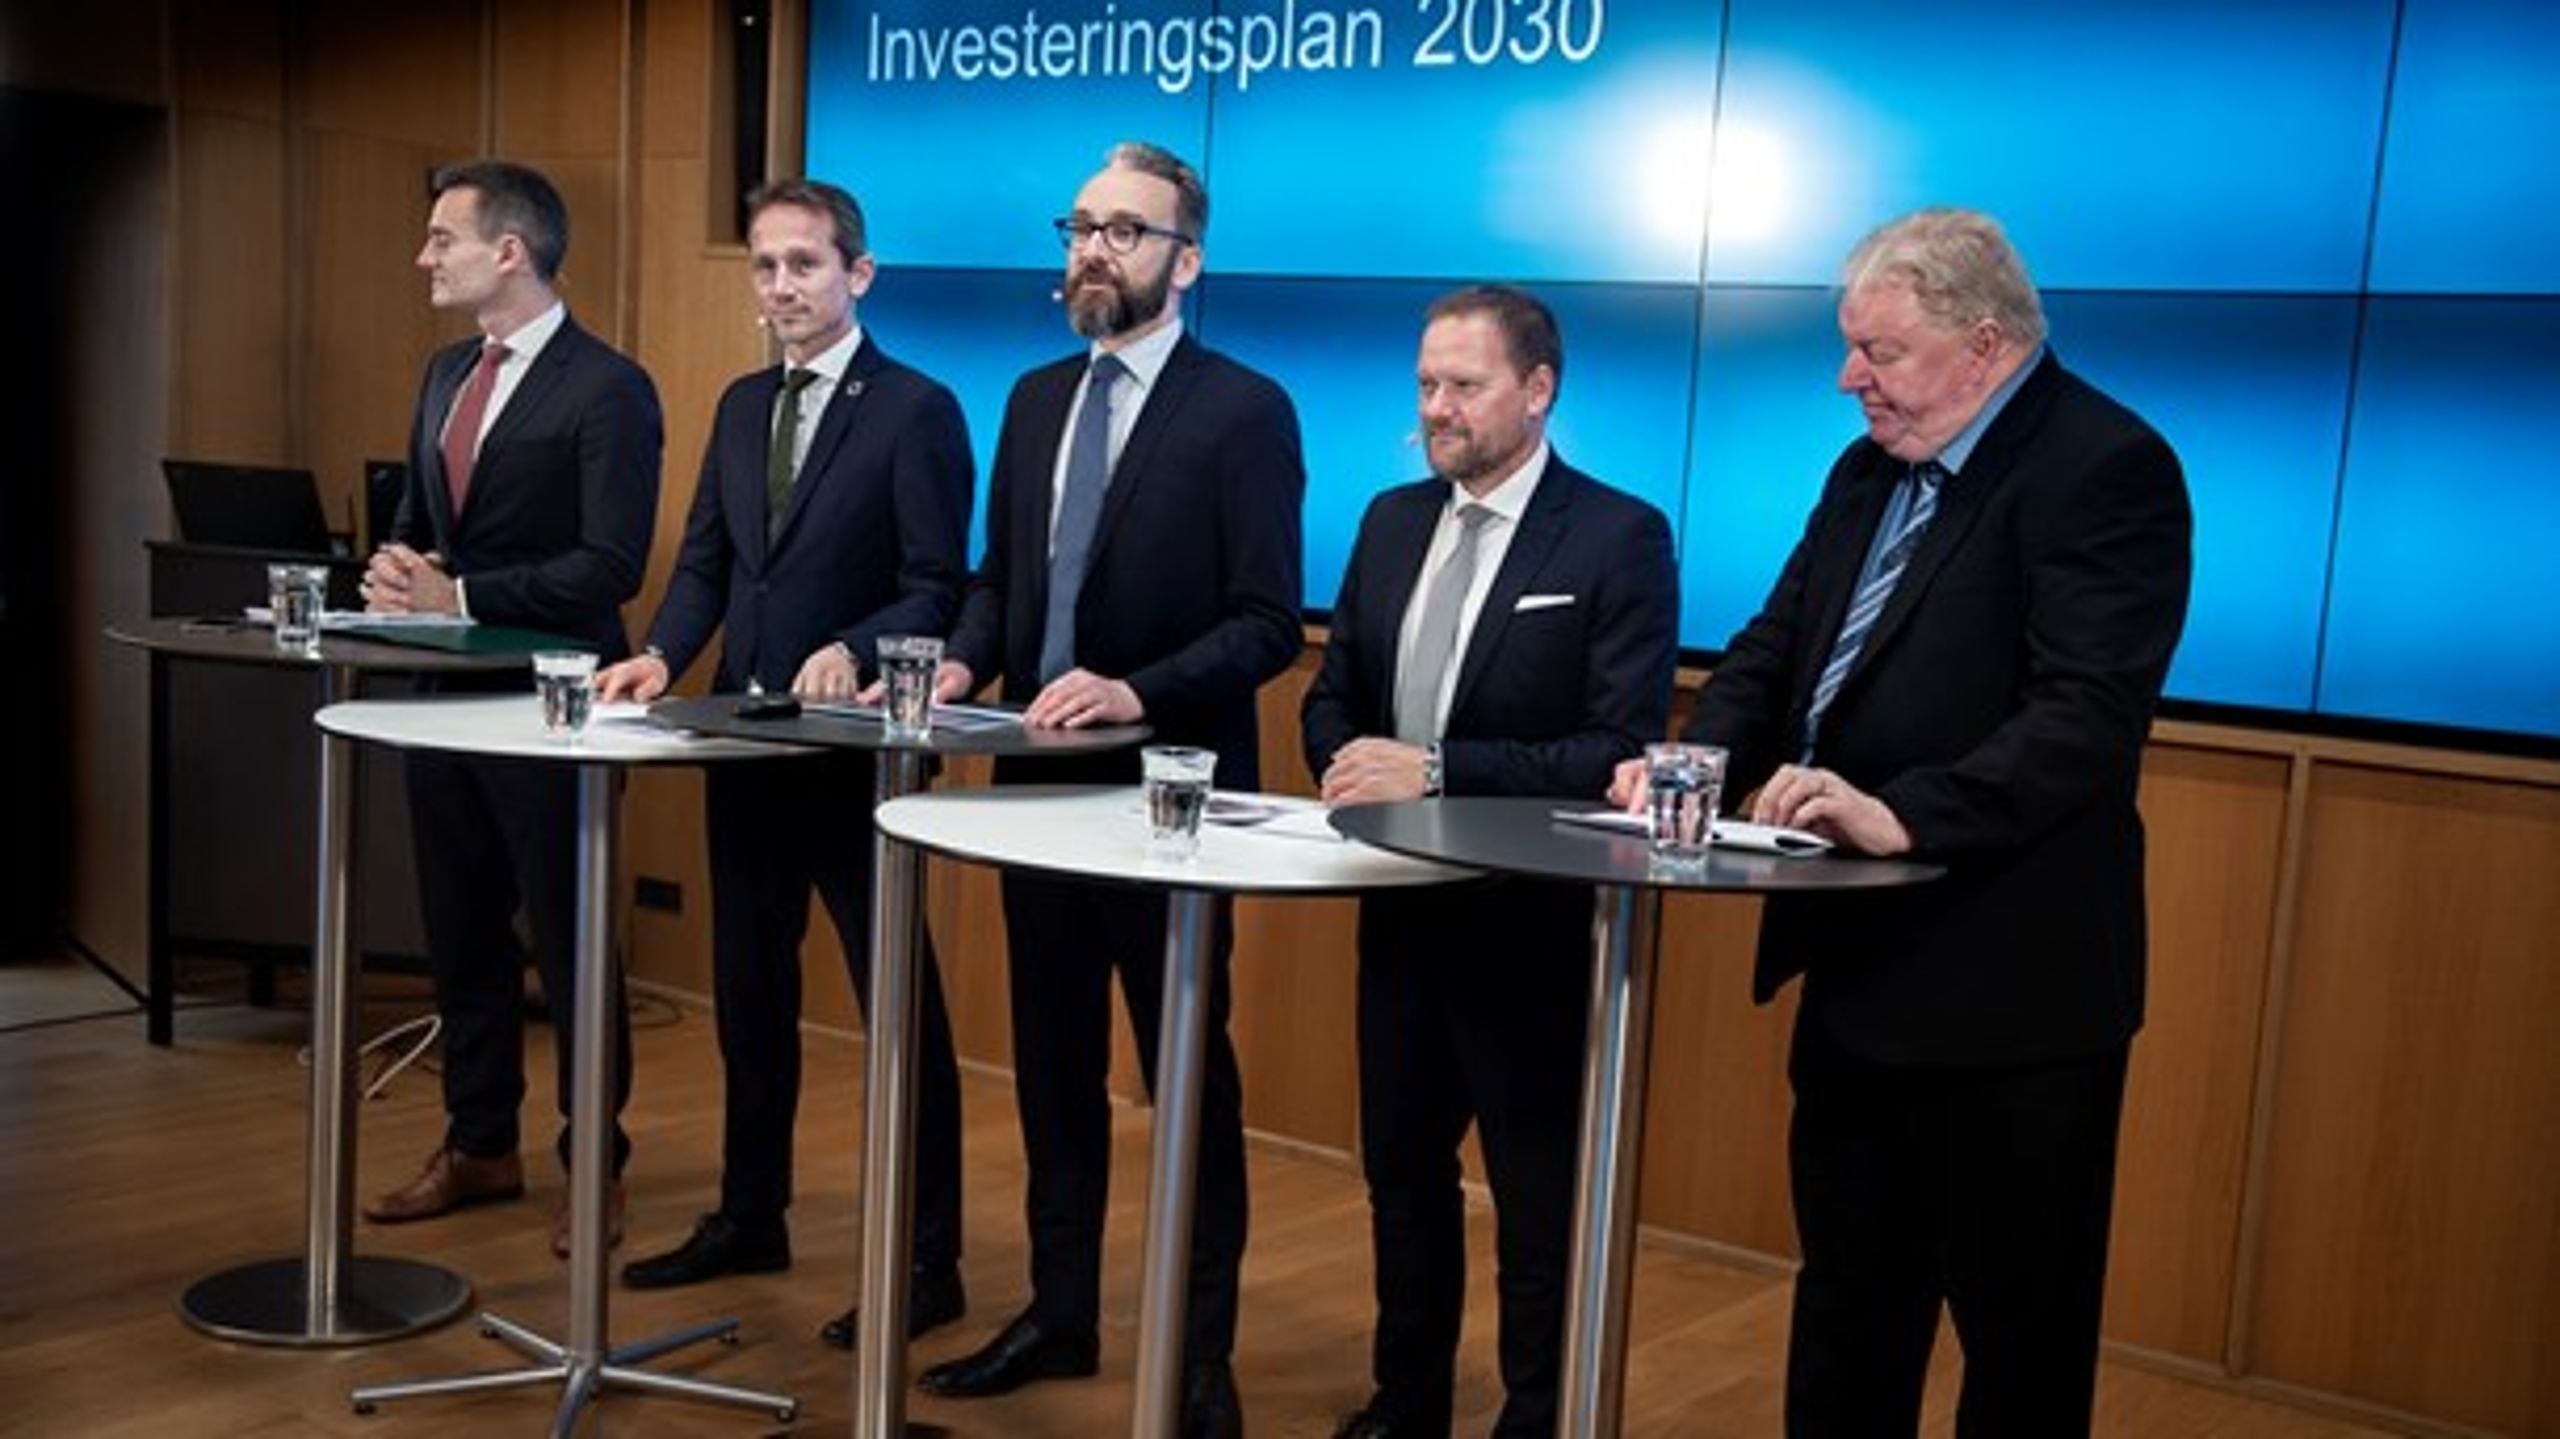 Infrastrukturaftalen mellem regeringen og Dansk Folkeparti er en god aftale, der langt hen ad vejen beriger landets godskørende vognmænd, mener Erik Østergaard.